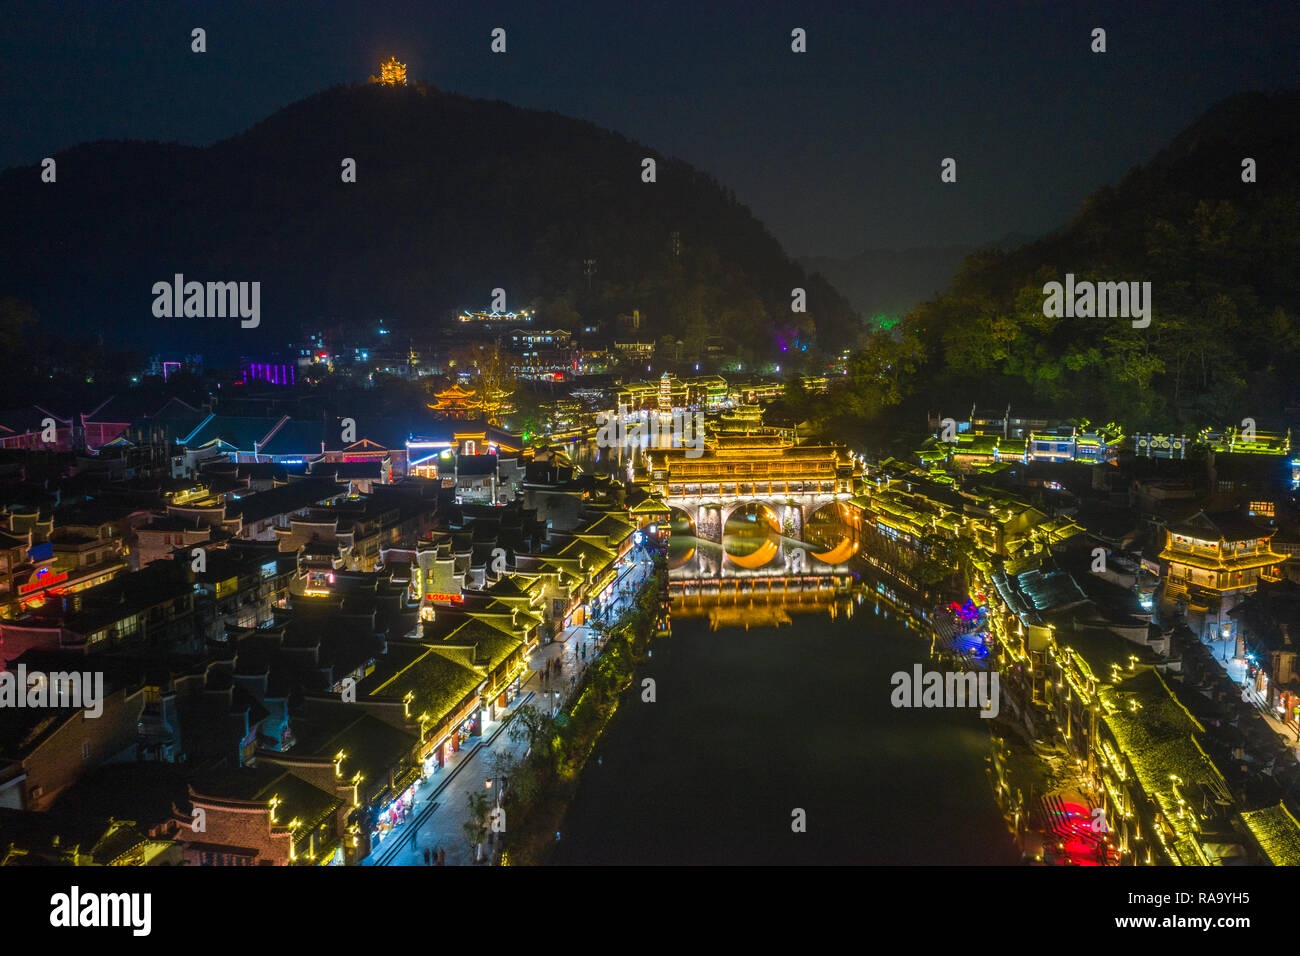 Hermoso puente y casas antiguas de Fenghuang Antigua ciudad de noche Foto de stock